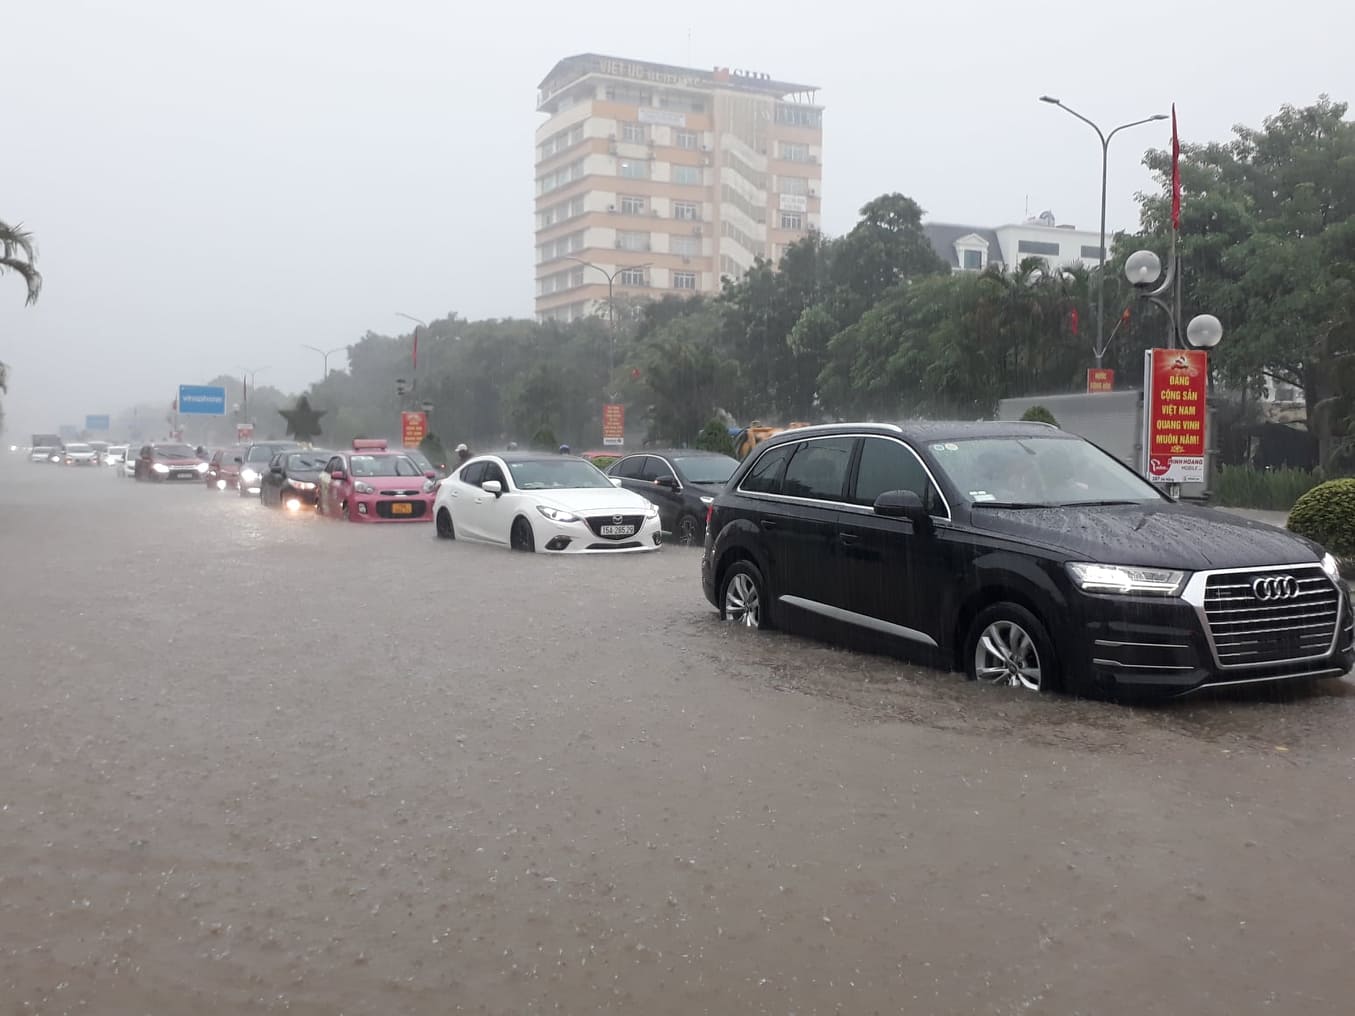 Không chỉ xe máy, xe ô tô khi tham gia giao thông cũng gặp khó khăn trong quá trình di chuyển vì mưa lớn, ngập lụt. Tấc đường kéo dài.